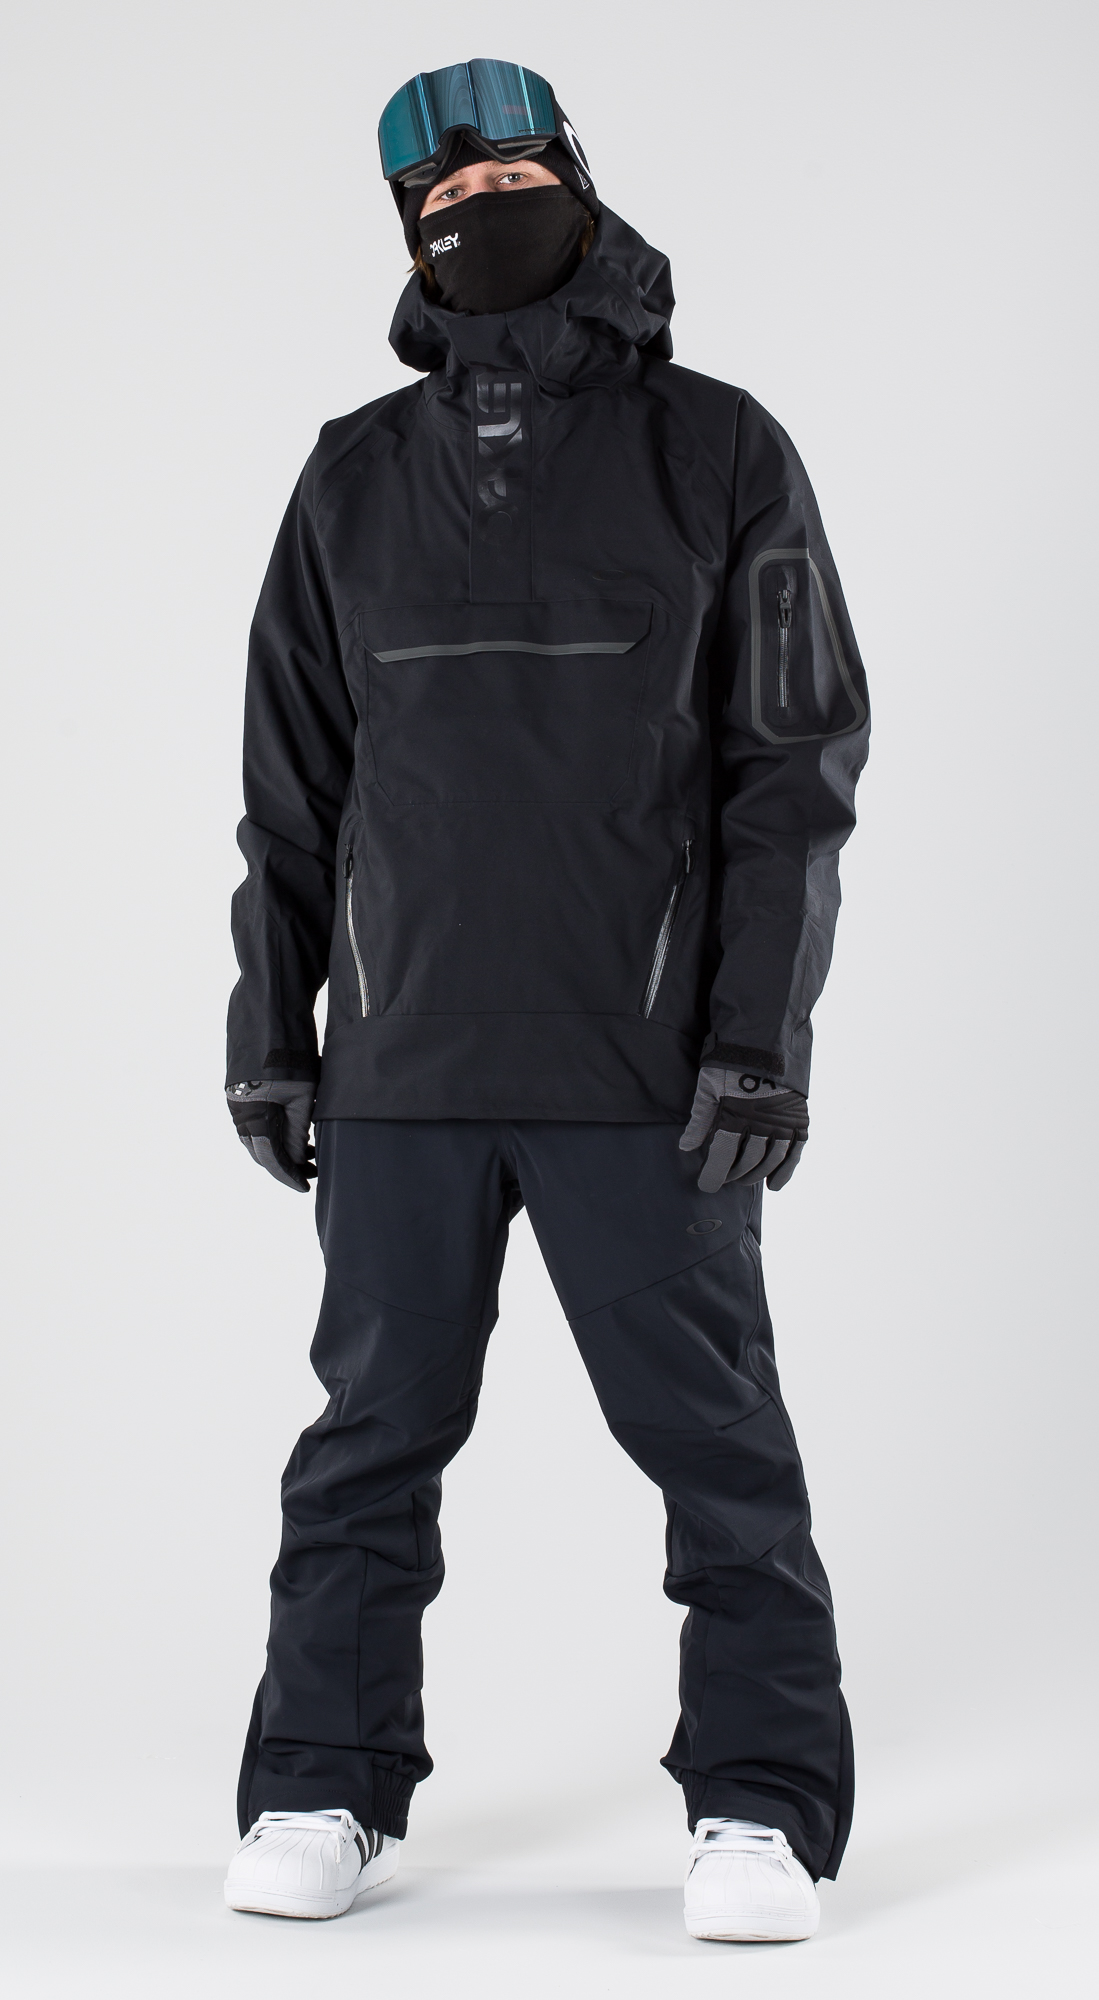 oakley snowboard gear